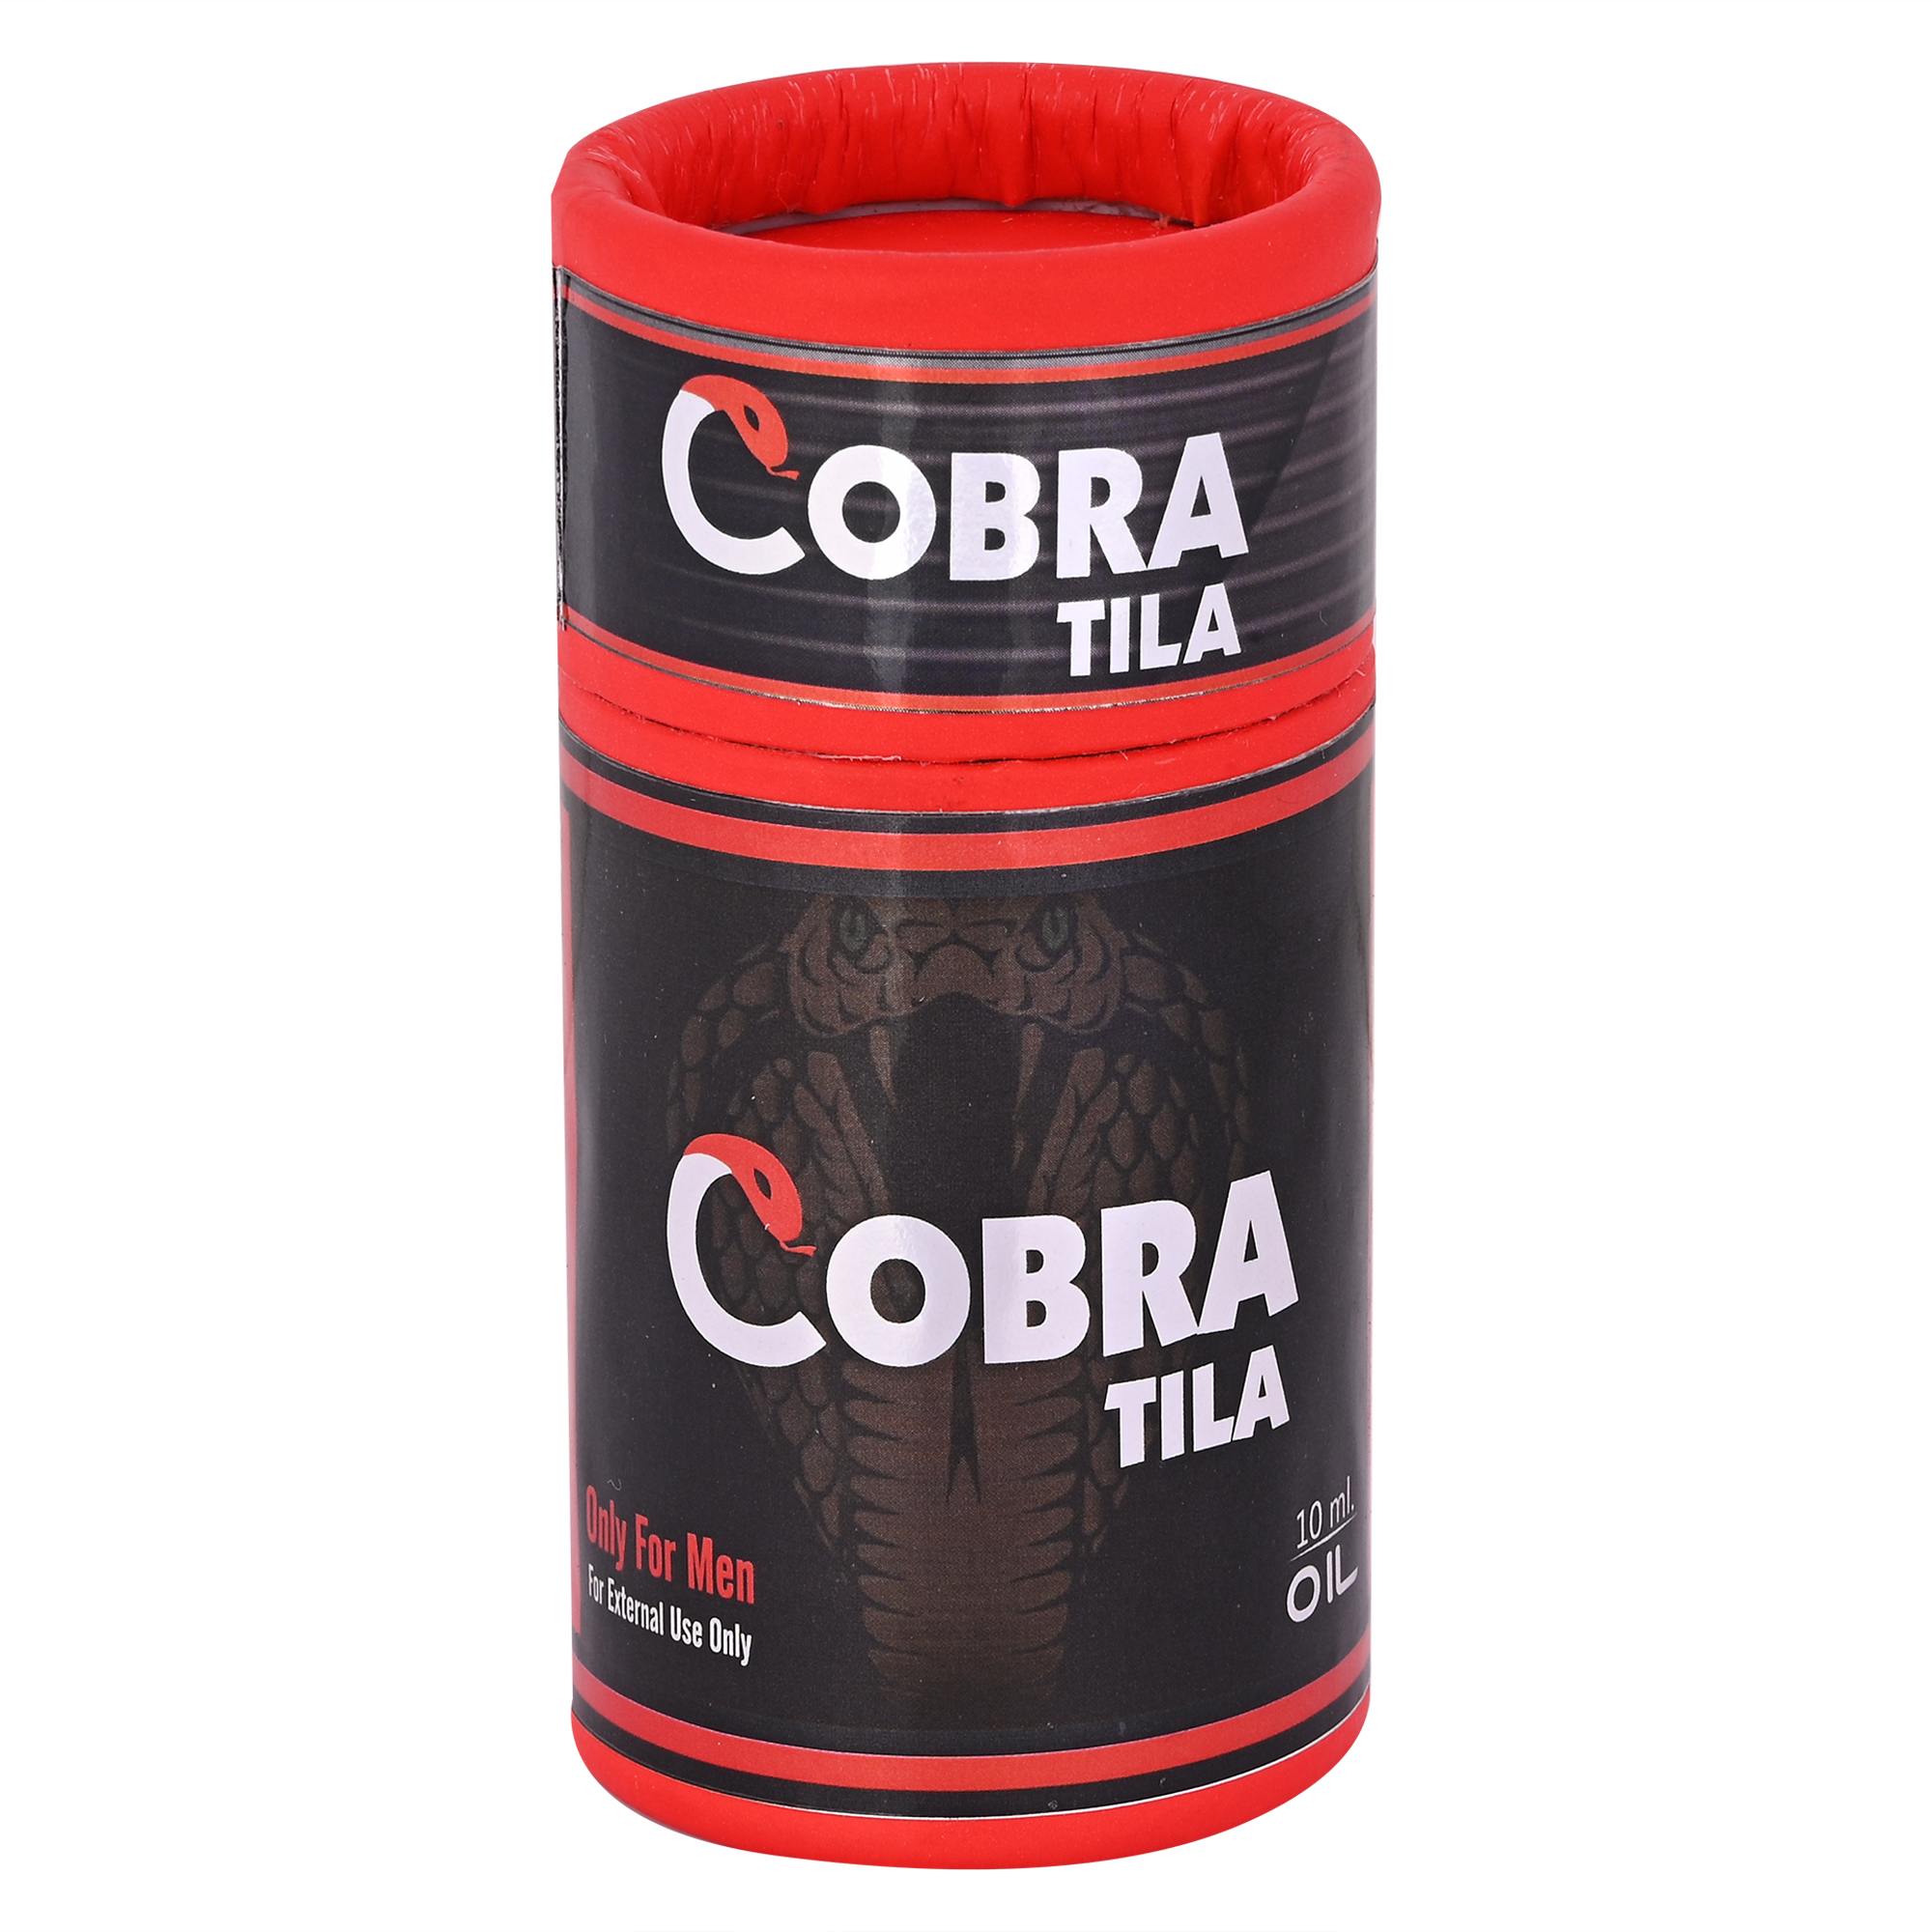 Buy Cipzer Cobra Tila at Best Price Online